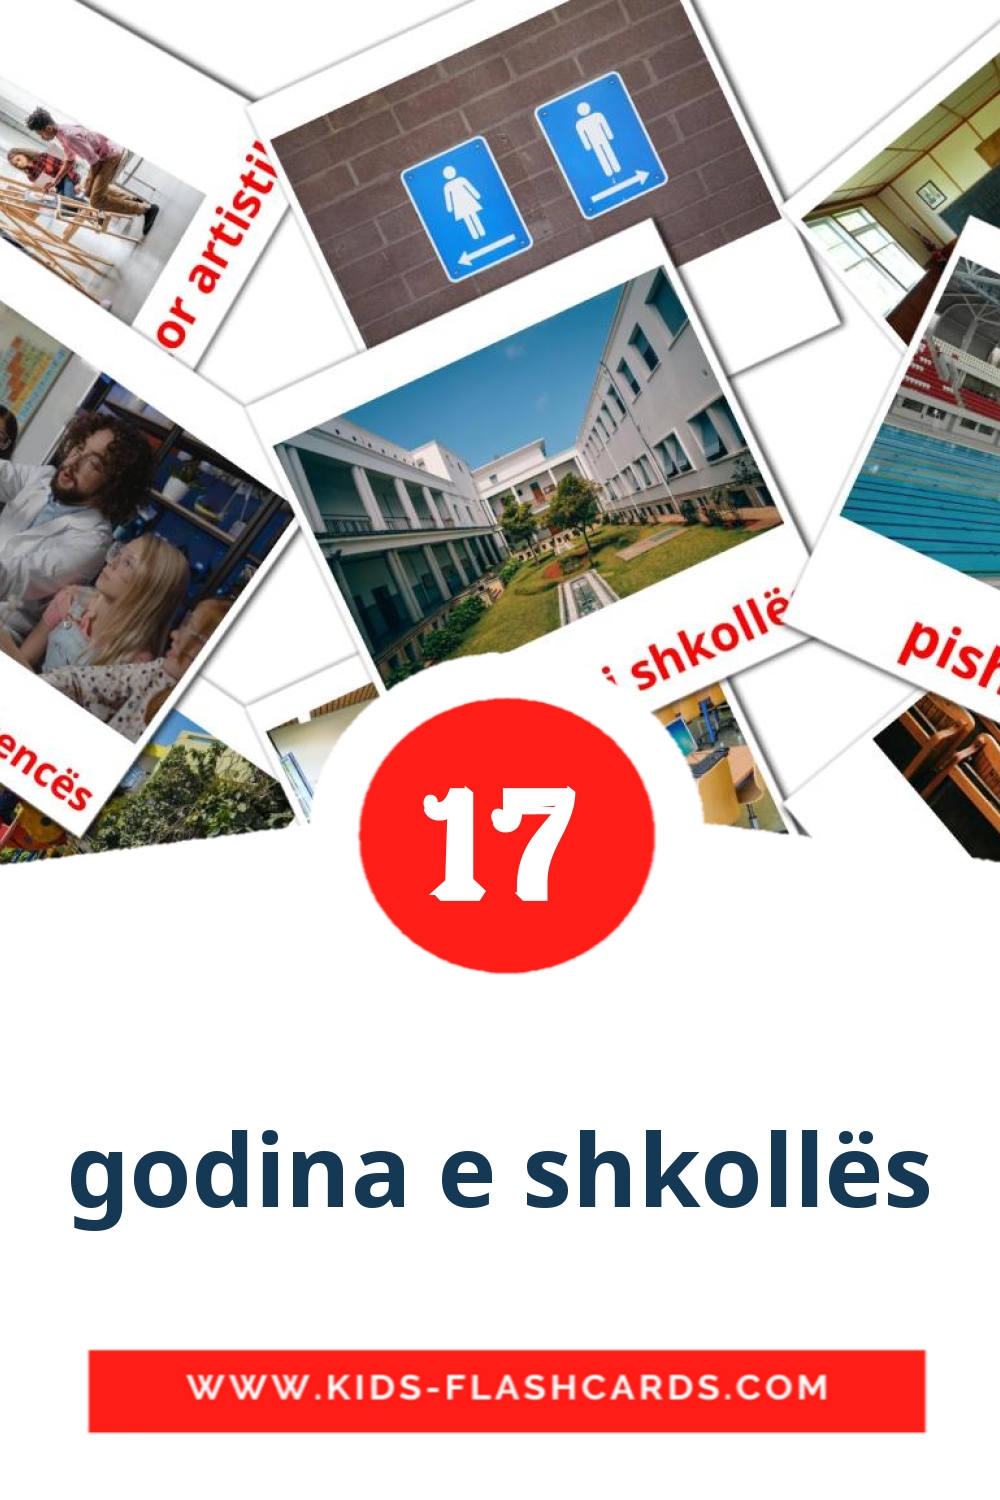 17 tarjetas didacticas de godina e shkollës para el jardín de infancia en albanés